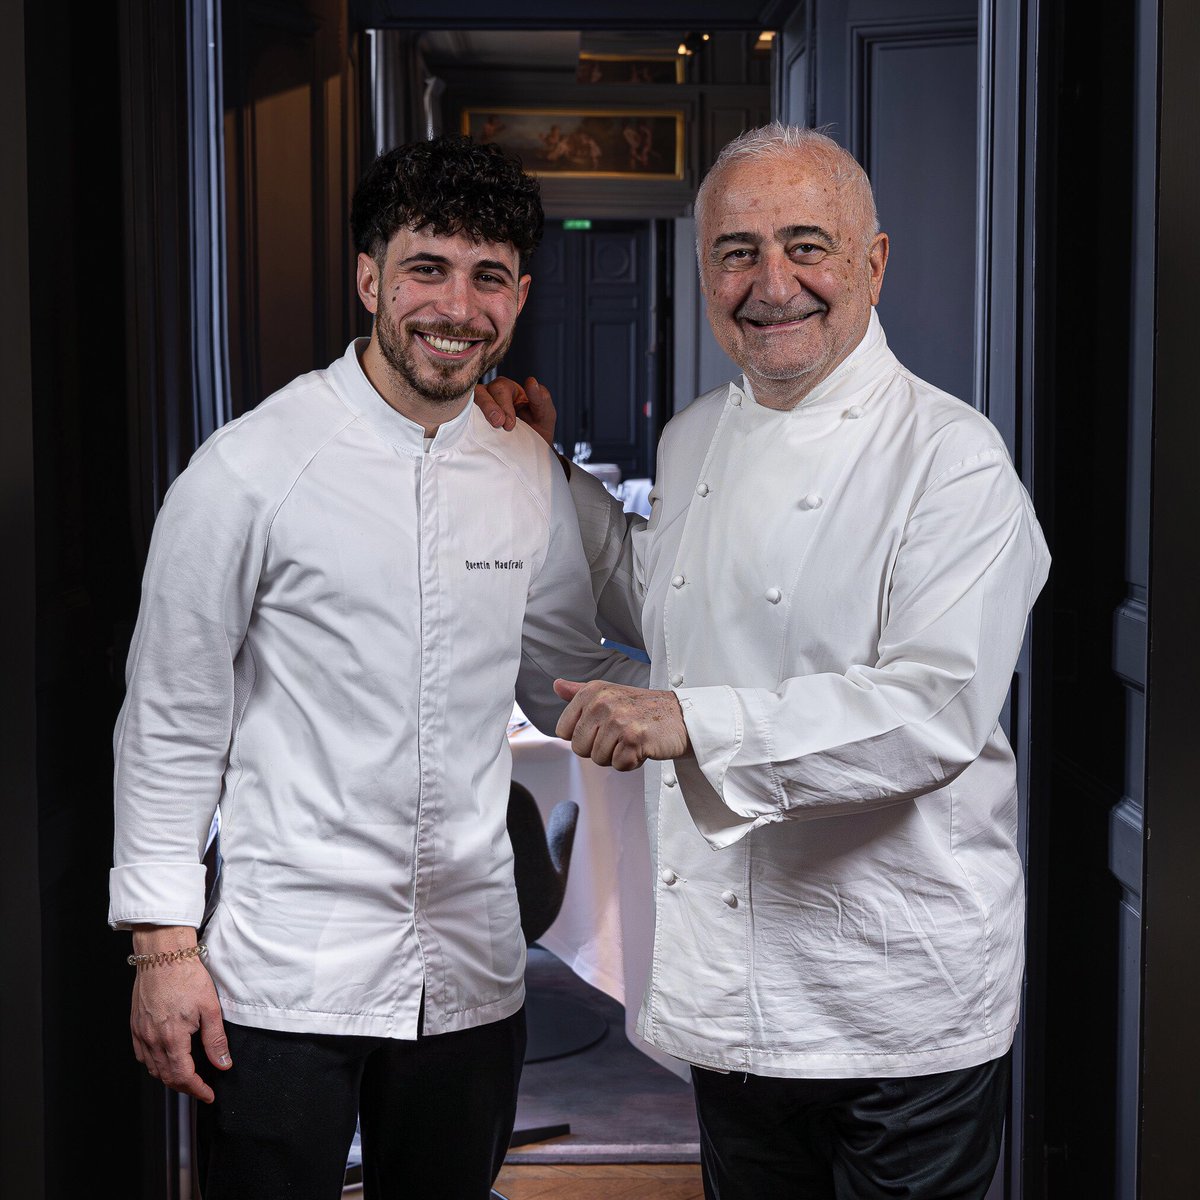 Bonne chance à Quentin Maufrais, chef-adjoint au restaurant Le Chiberta, pour la saison 15 de Top Chef qui débute ce soir sur @M6 ! #TopChef #guysavoy #guysavoyparis #restaurant #restaurants #artdevivre #artdevivrealafrancaise #frenchartdevivre #cuisine #cuisinefrancaise…